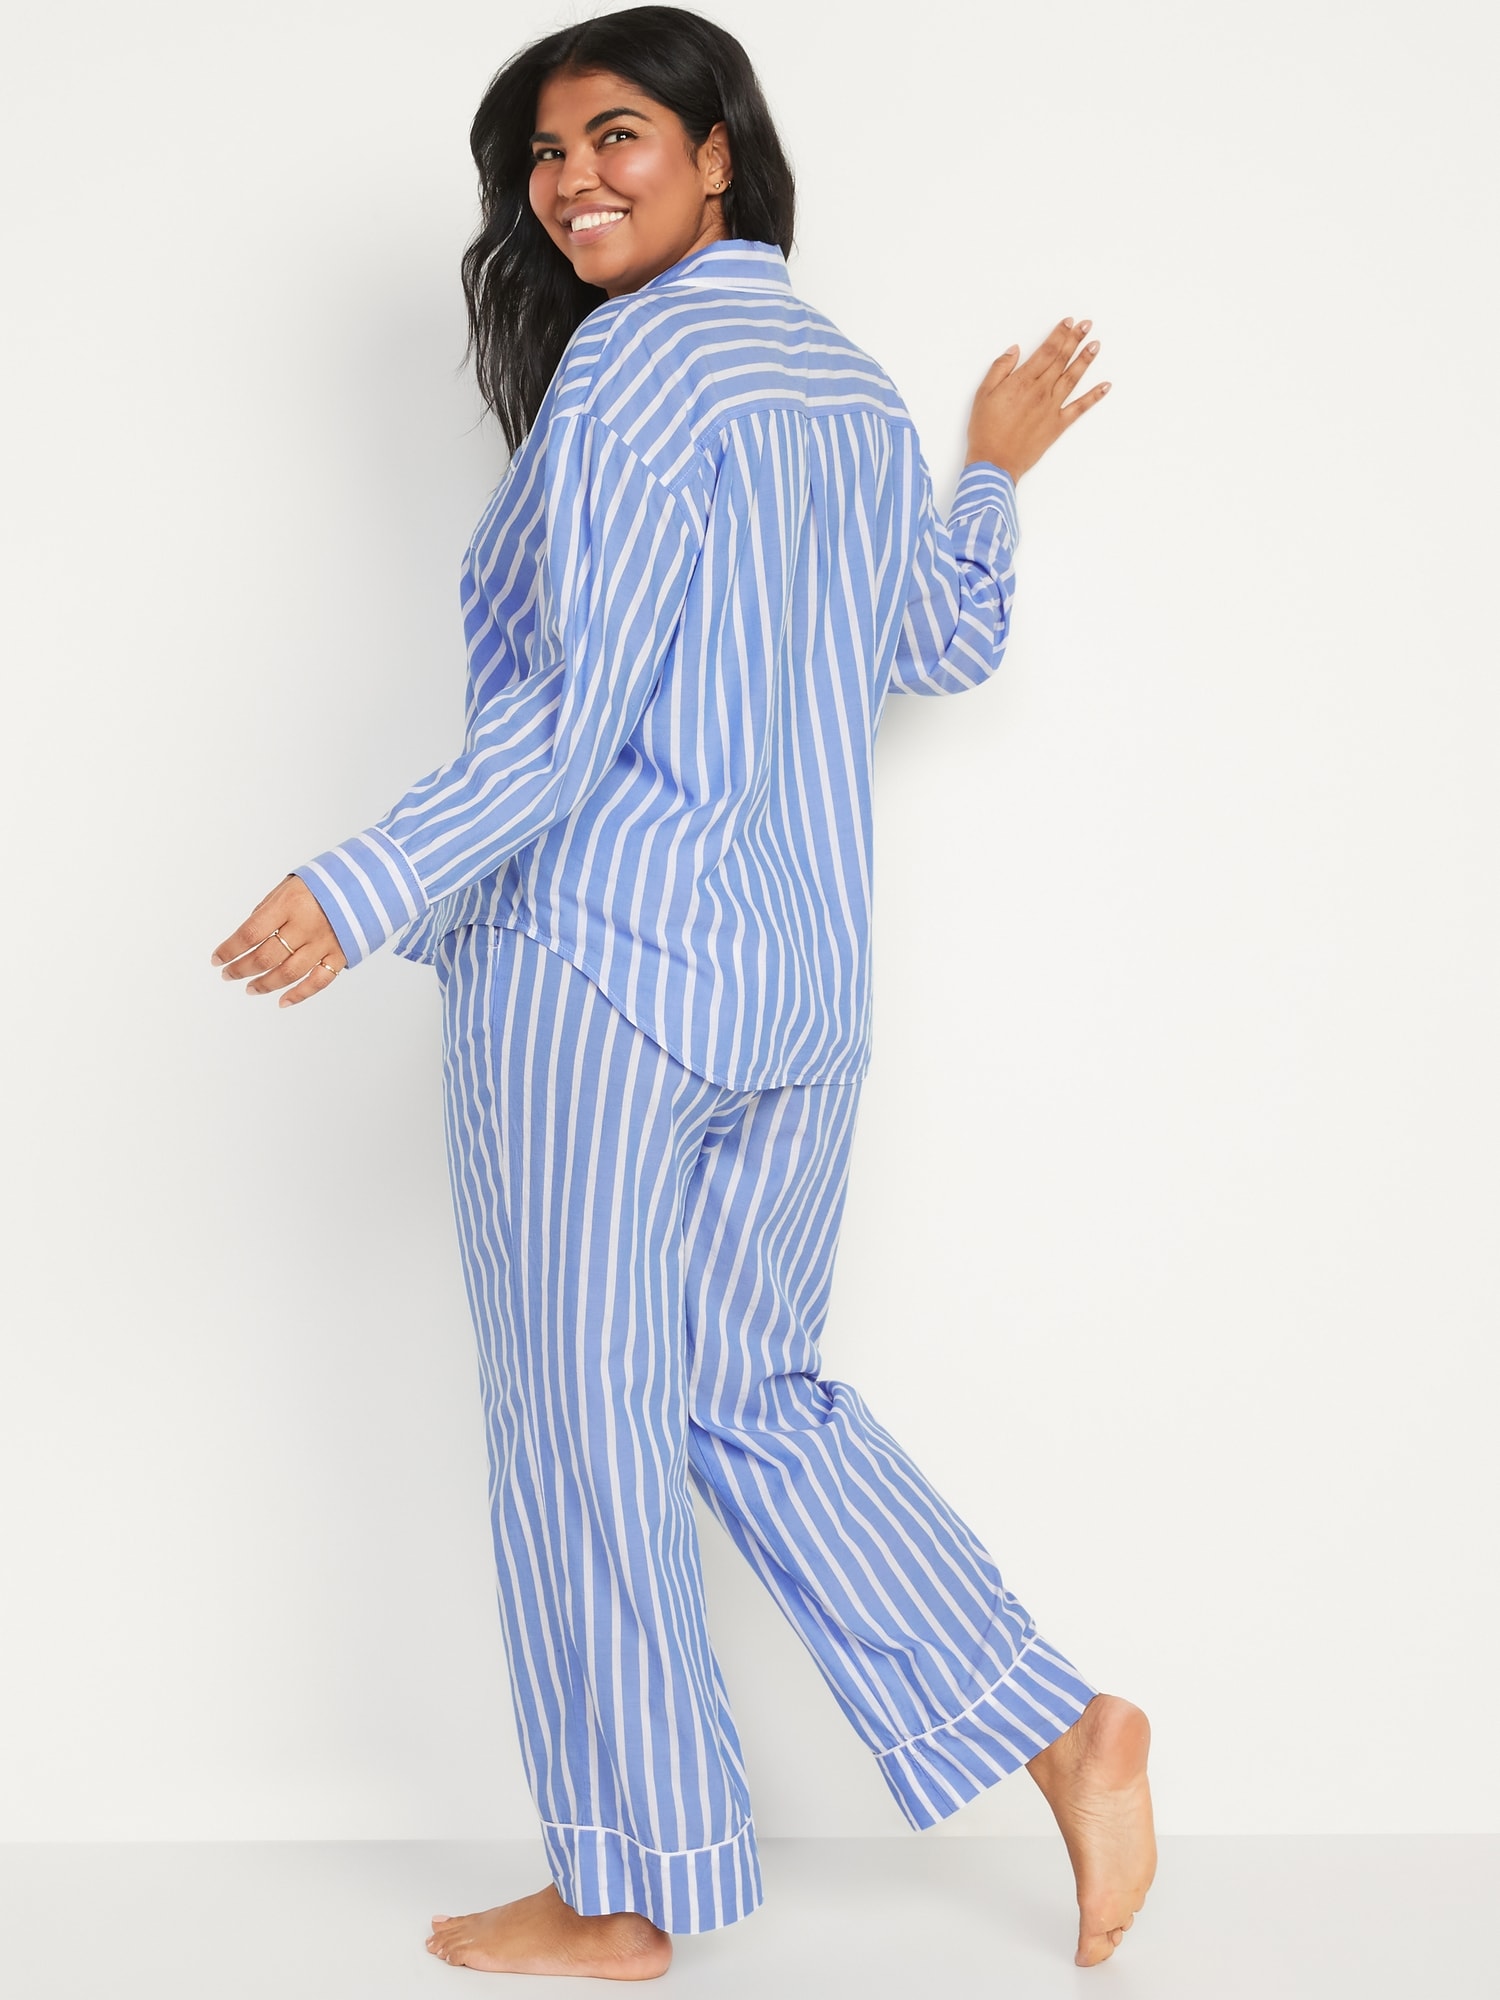 Matching Printed Pajama Set for Women | Old Navy